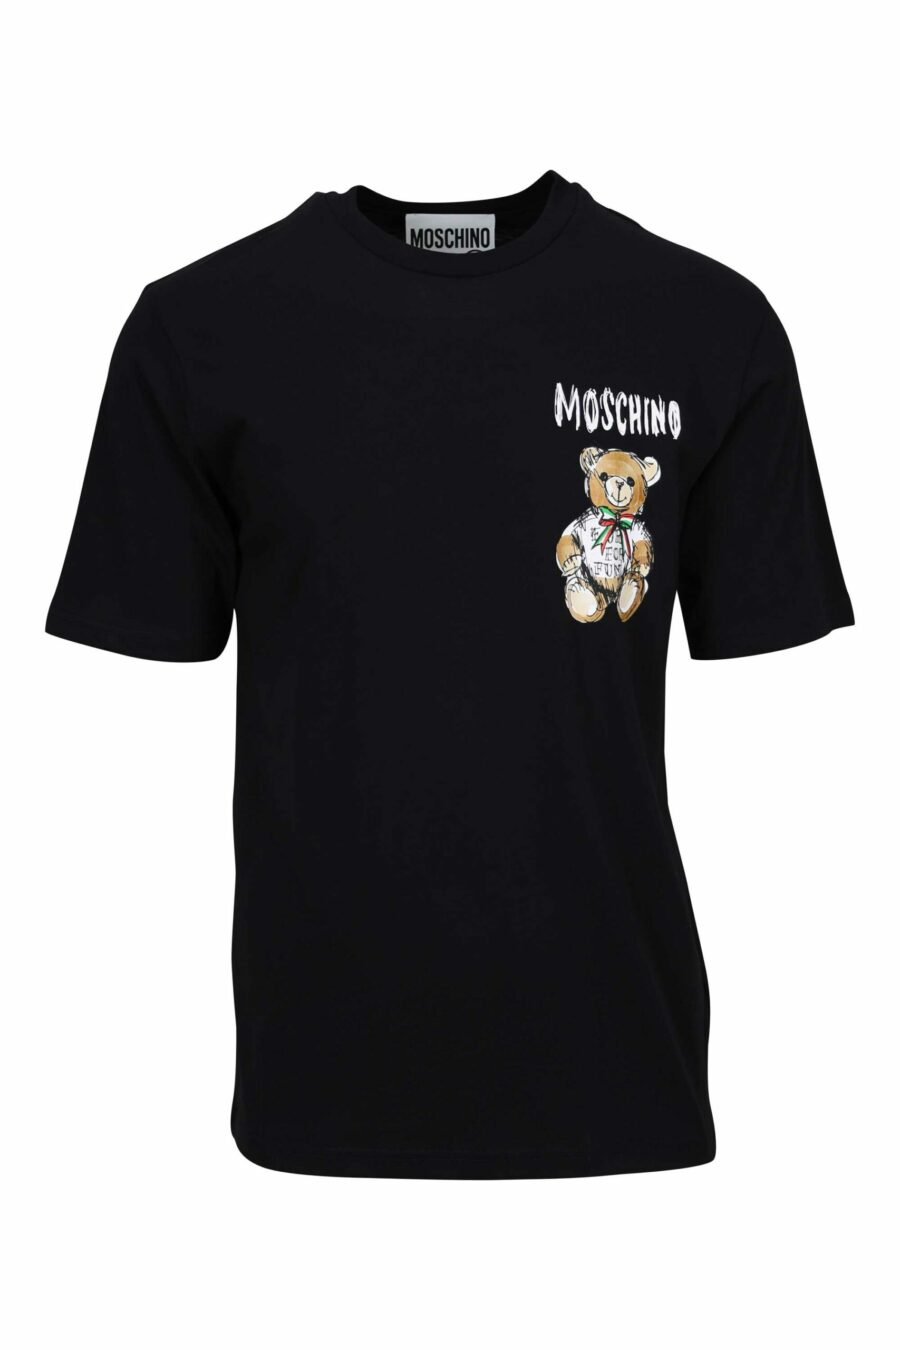 T-shirt preta com desenho de mini logótipo de urso - 667113767819 à escala